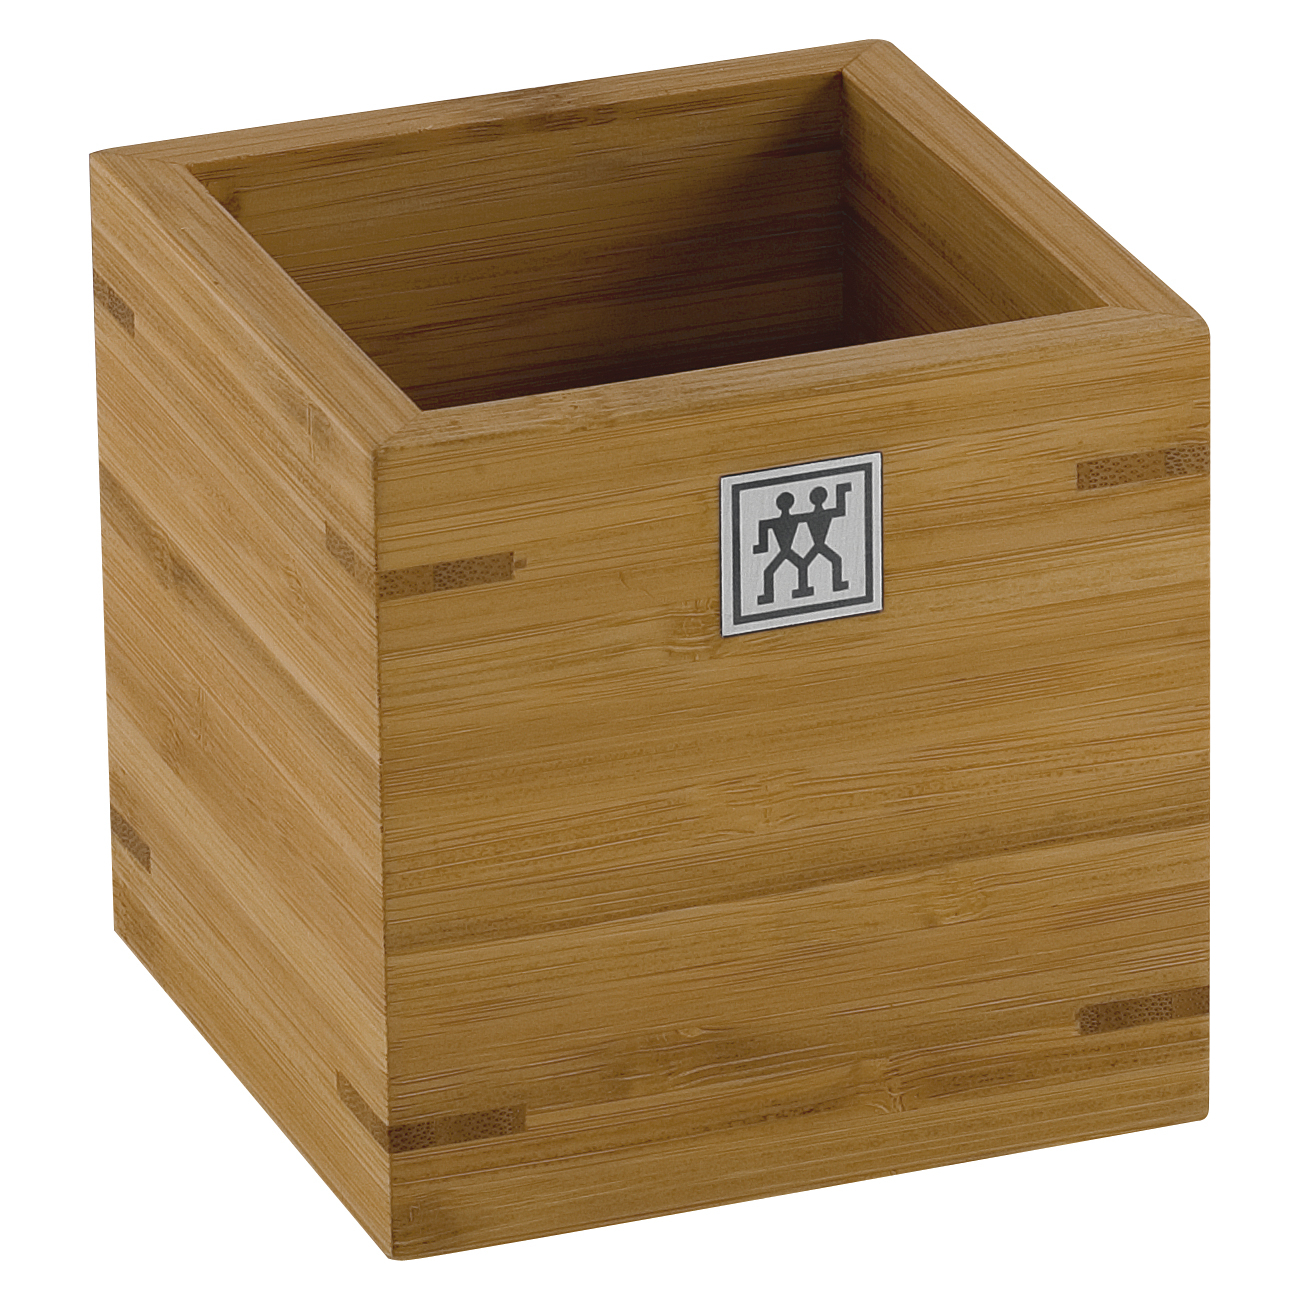 ZWILLING Bambus Behälter - Küchenutensilien Aufbewahrungsbox / Organizer